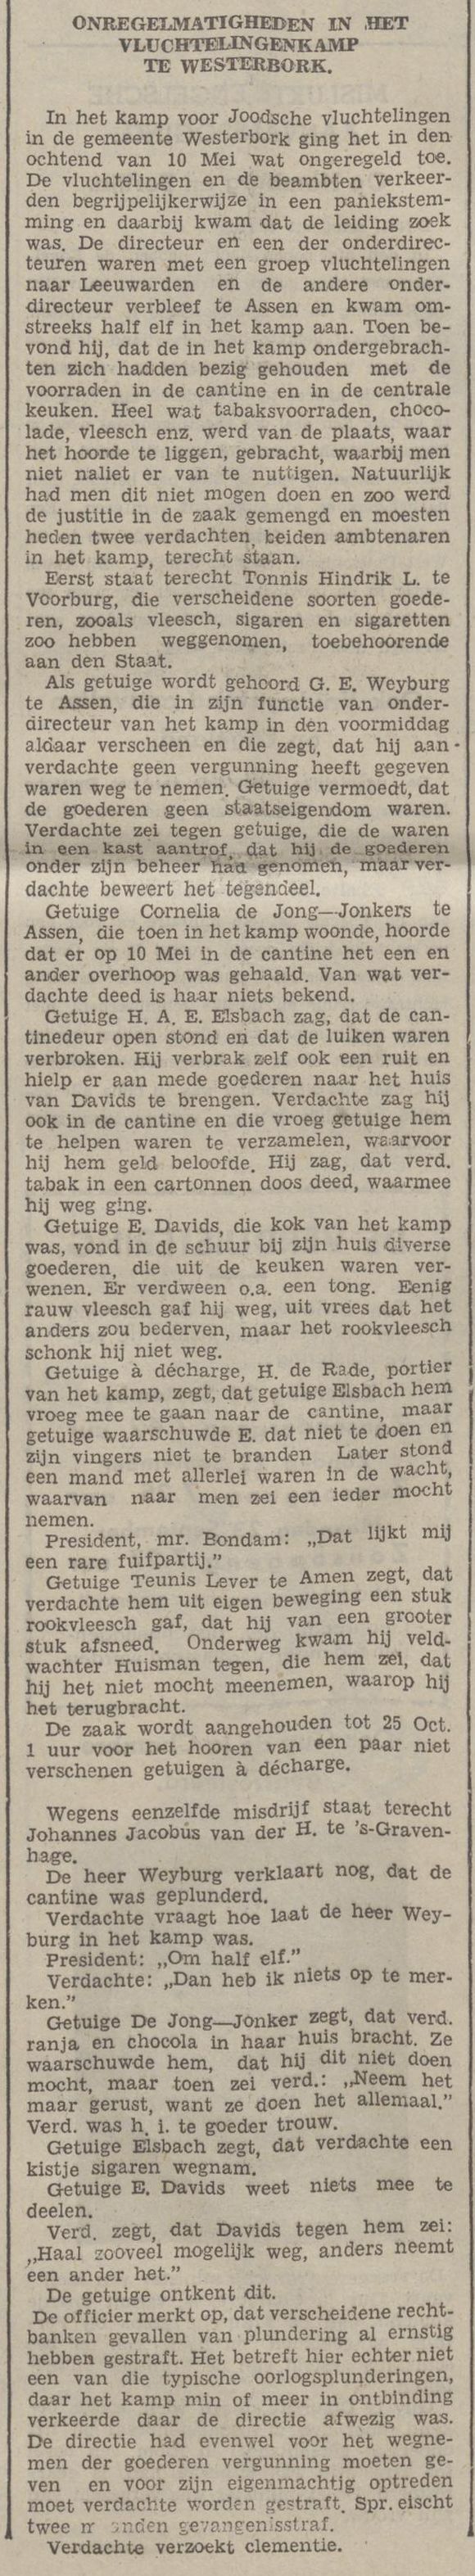 19400921 krant PDAC ontstaan kamp Westerbork 23